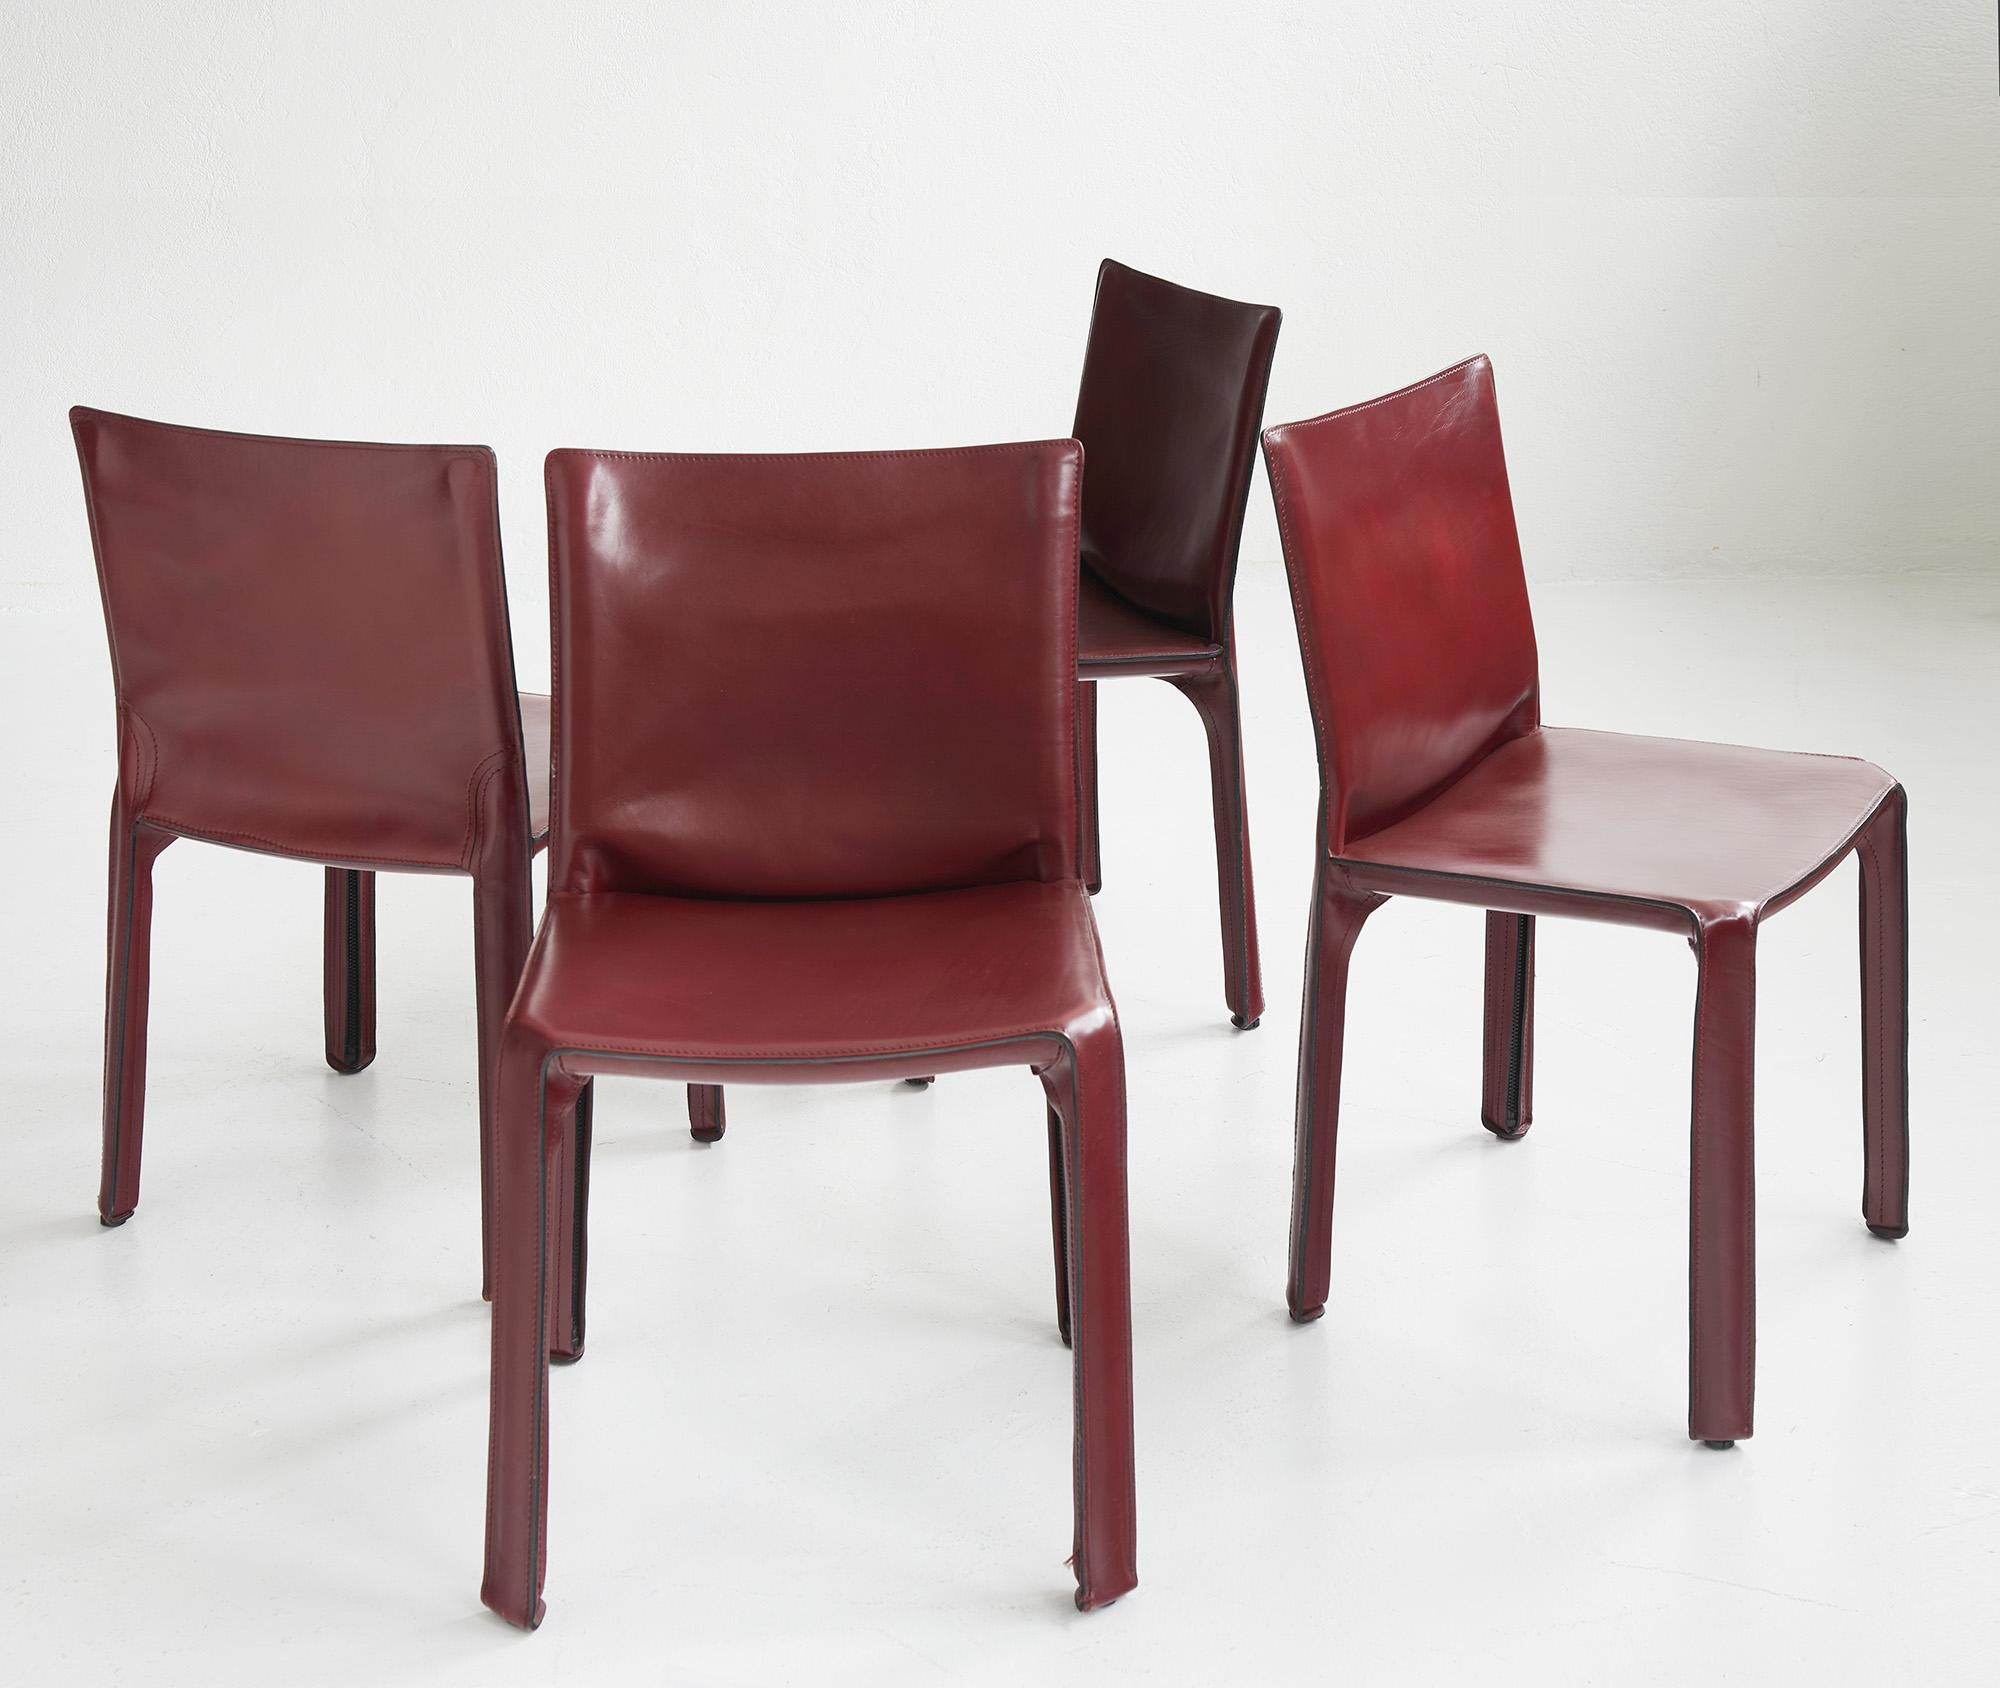 Satz von 4 CAB-Stühlen von Mario Bellini by Cassina, Italien 

Das CAB 412 besteht aus einer röhrenförmigen Metallstruktur, die mit einem dicken, sattelgenähten Lederbezug überzogen ist. Das Leder folgt den Formen der Struktur und wird durch